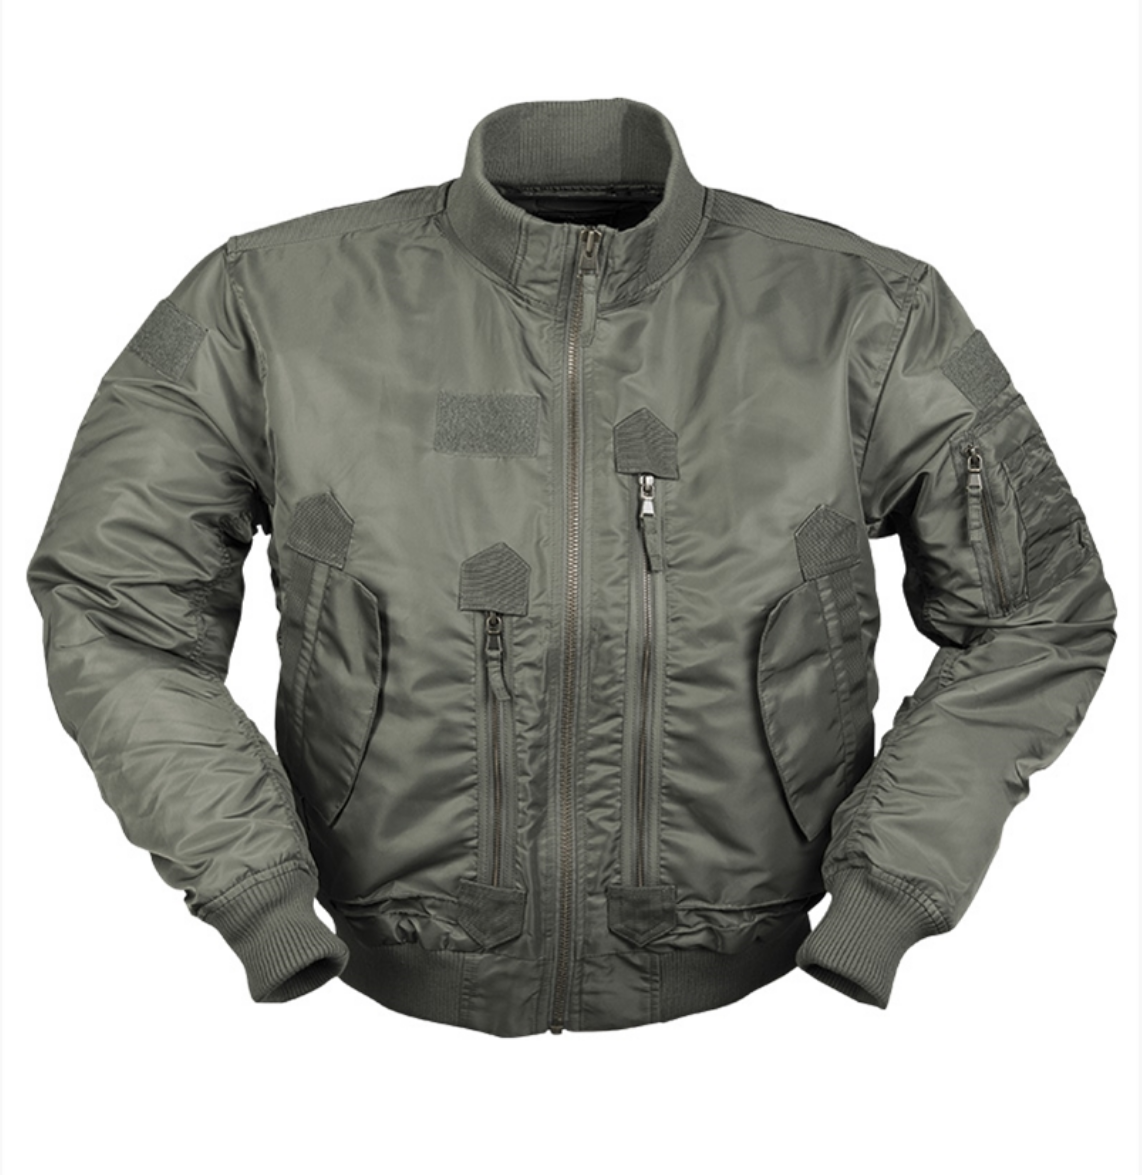 US Tactical flieger jacket oliv Miltec